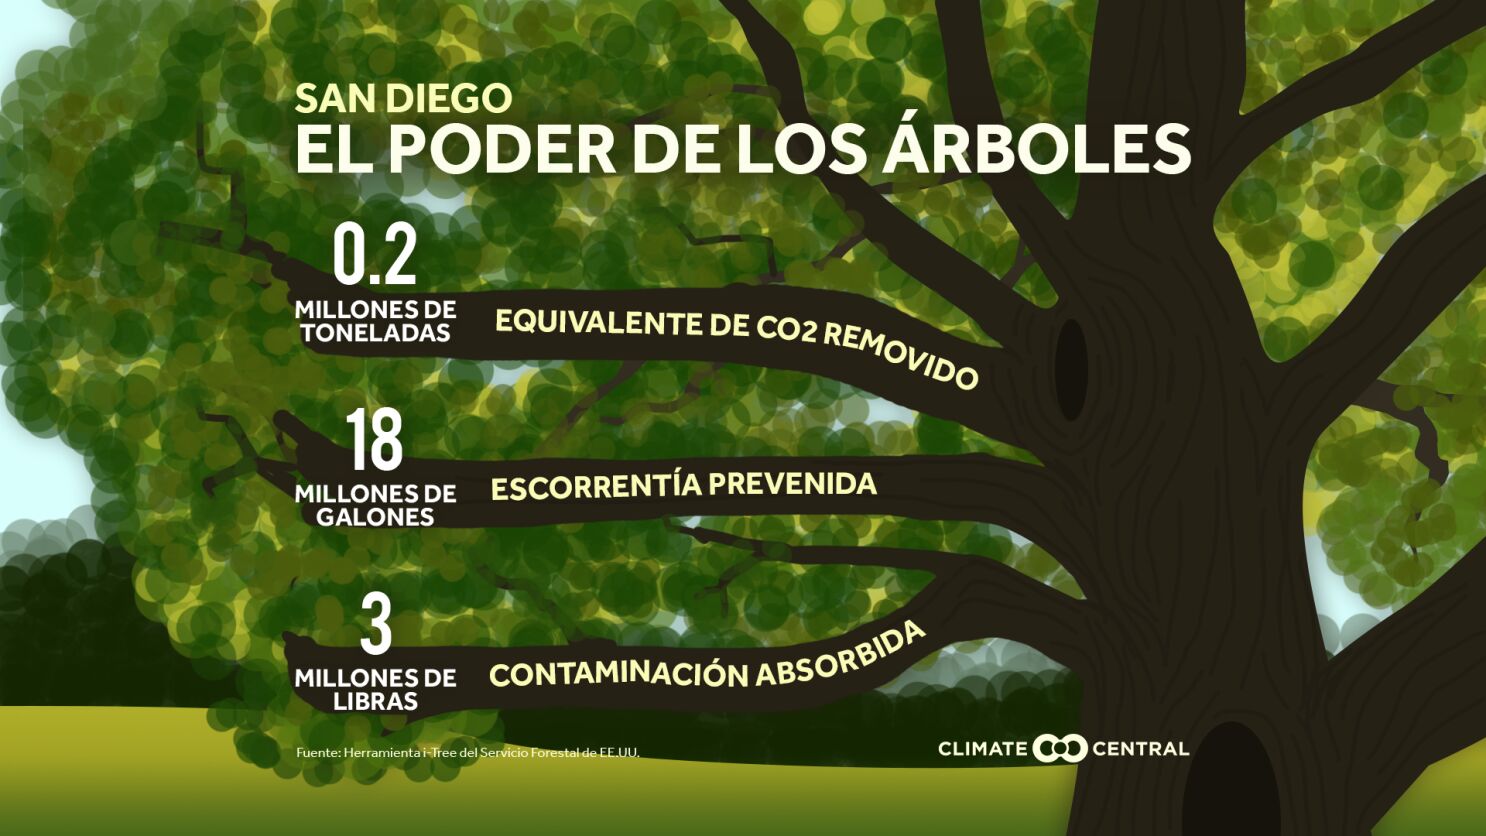 Plantar árboles ayuda a combatir el cambio climático - San Diego  Union-Tribune en Español